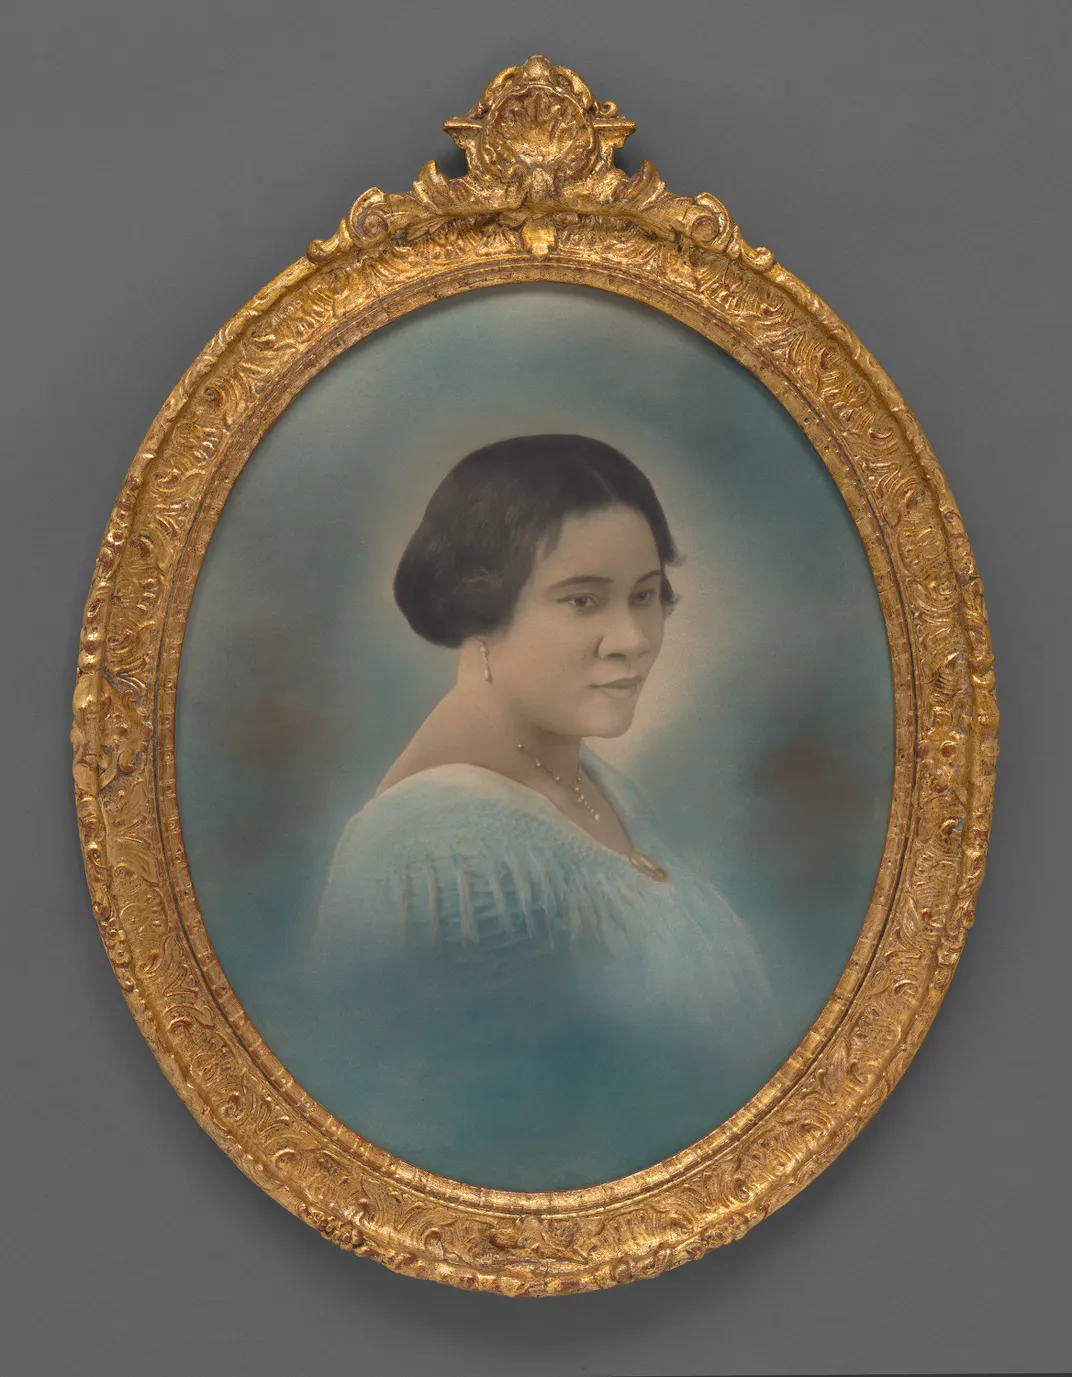 Madam C. J. Walker, unidentified artist, c. 1916